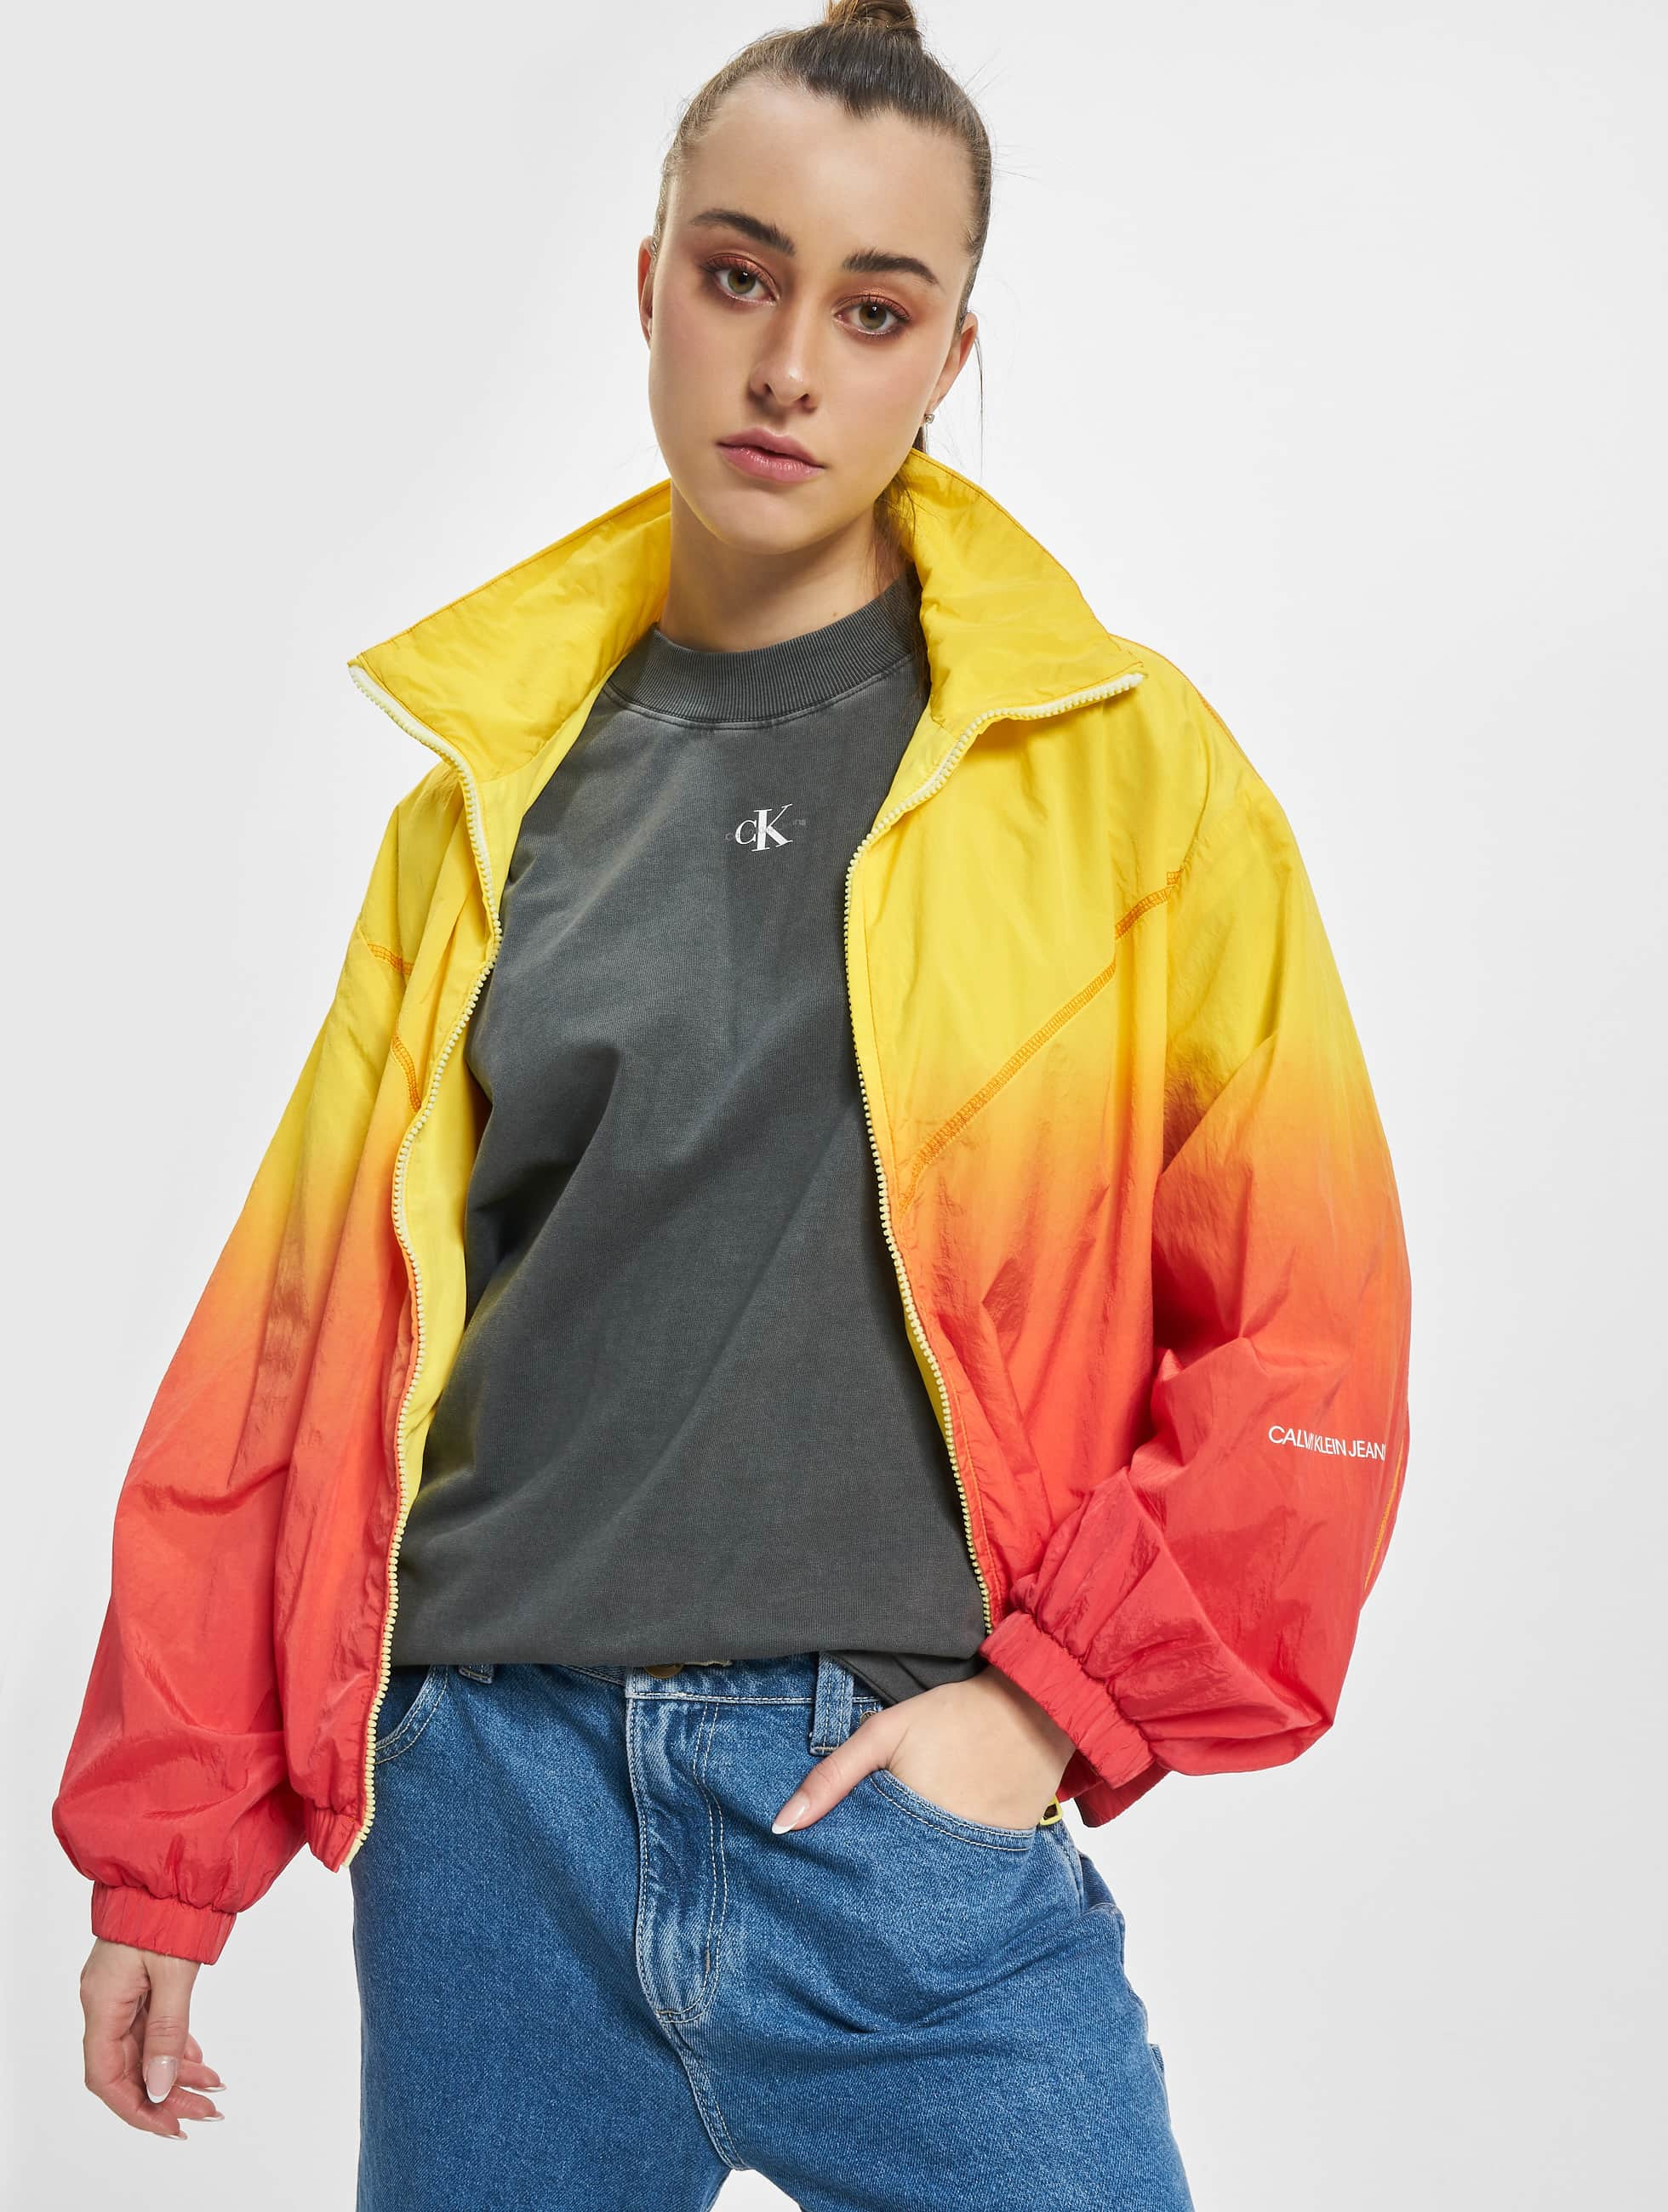 Bloodstained Afgørelse genopretning Calvin Klein Jeans Jakker / Transitional Jackets Dip Dye i gul 970751